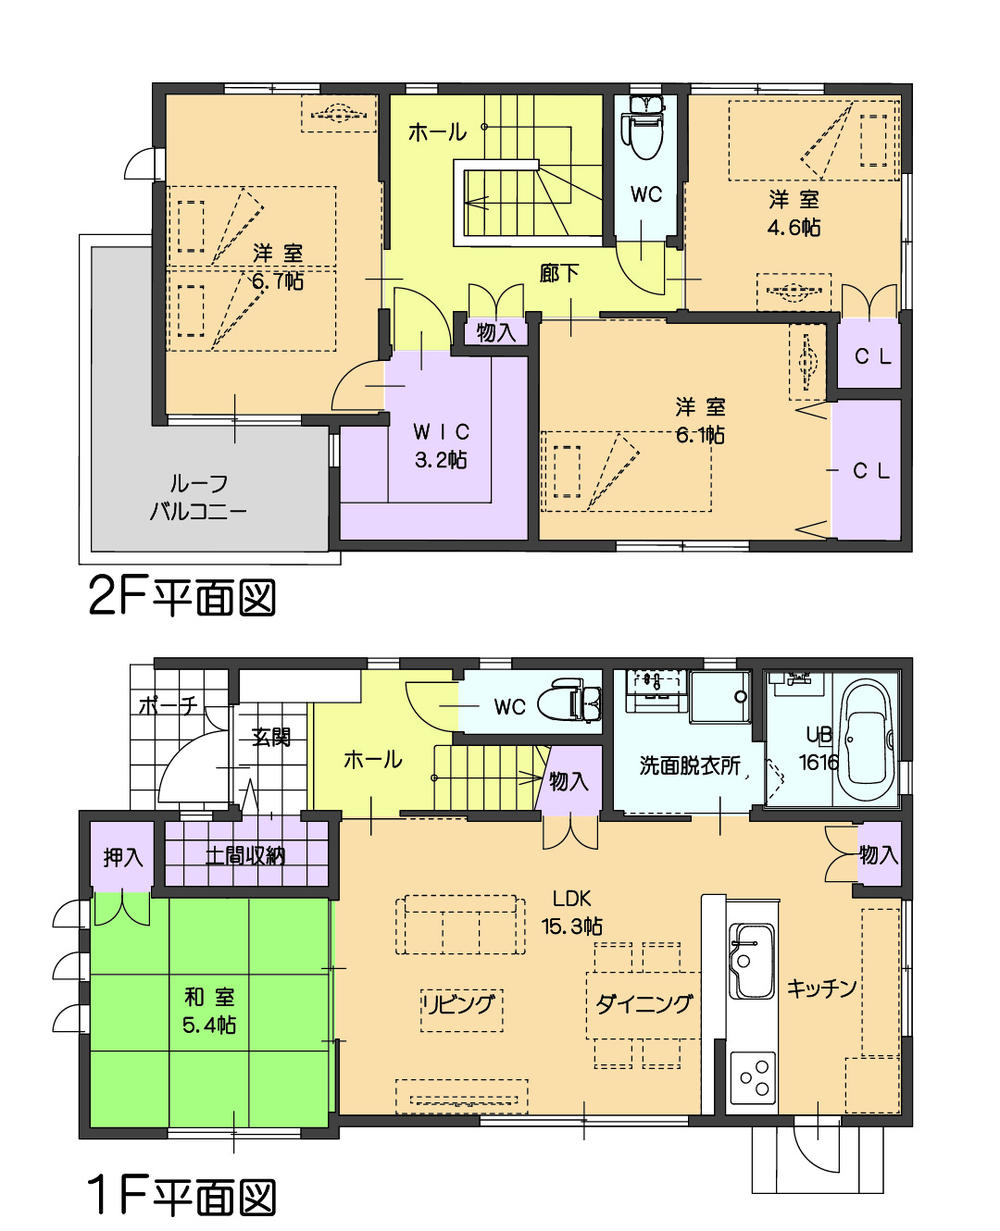 Floor plan. 28,300,000 yen, 4LDK, Land area 135.03 sq m , Building area 98.28 sq m 1 Building